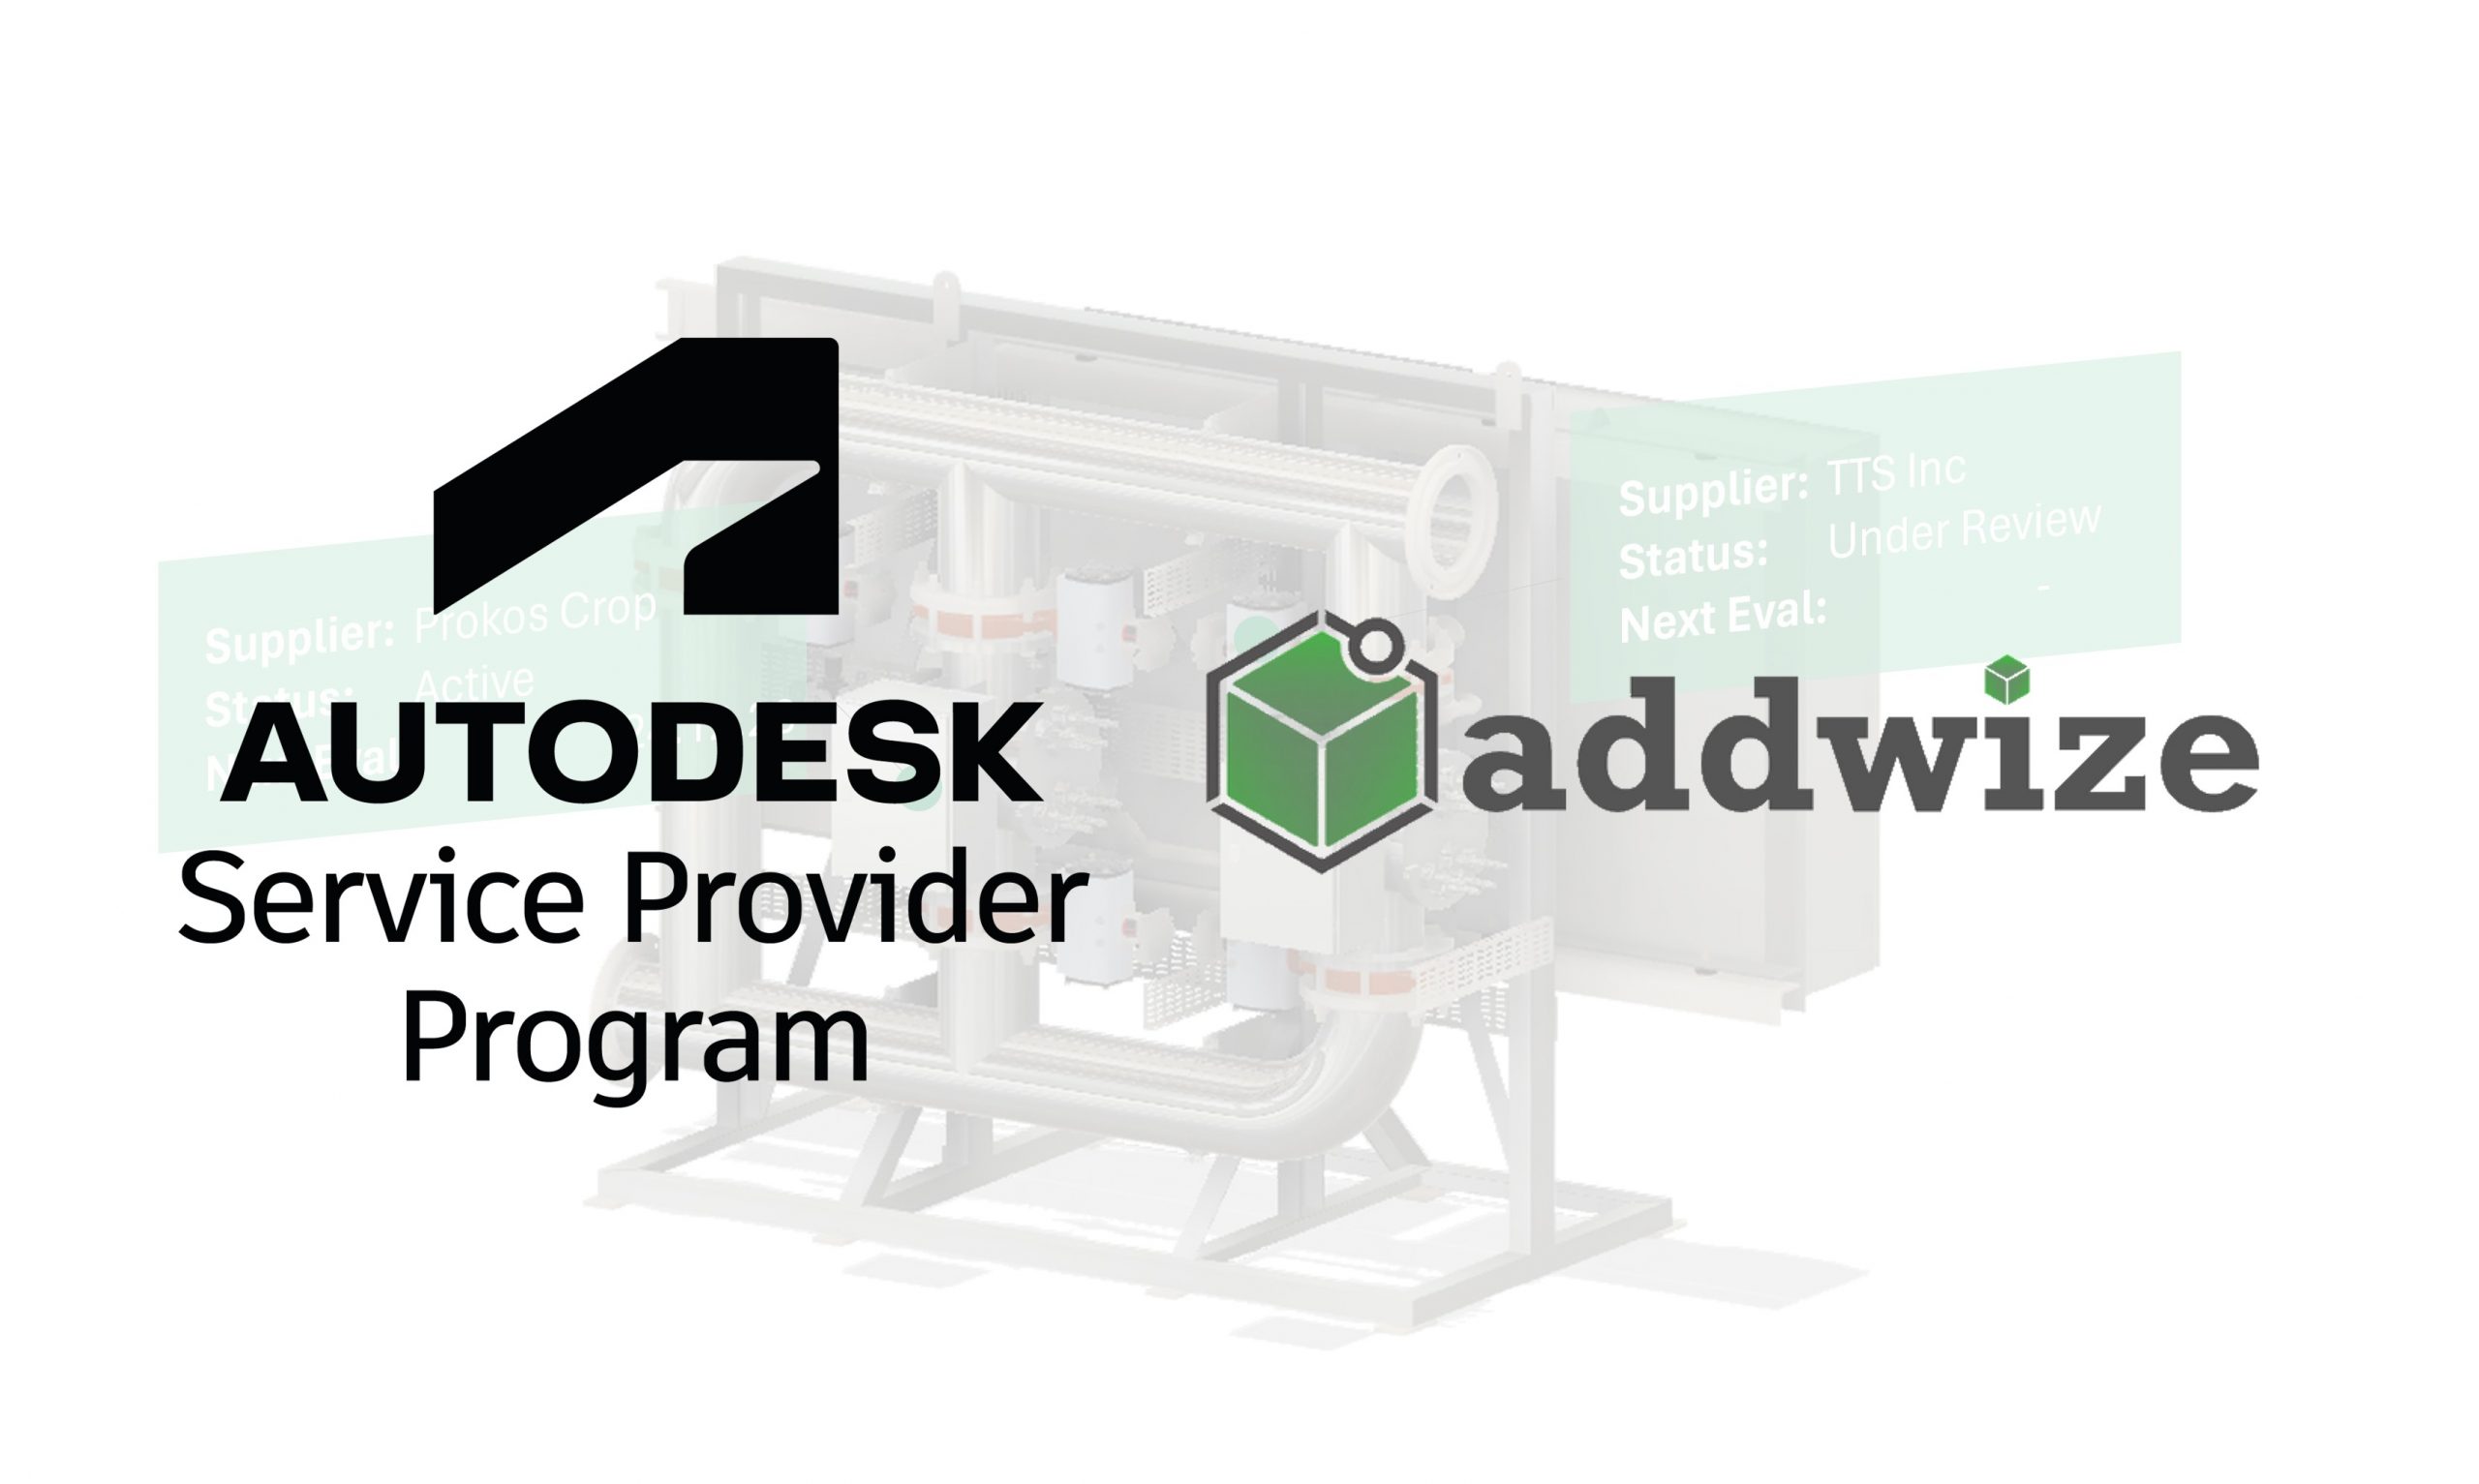 Autodesk Service Provider Program Addwize